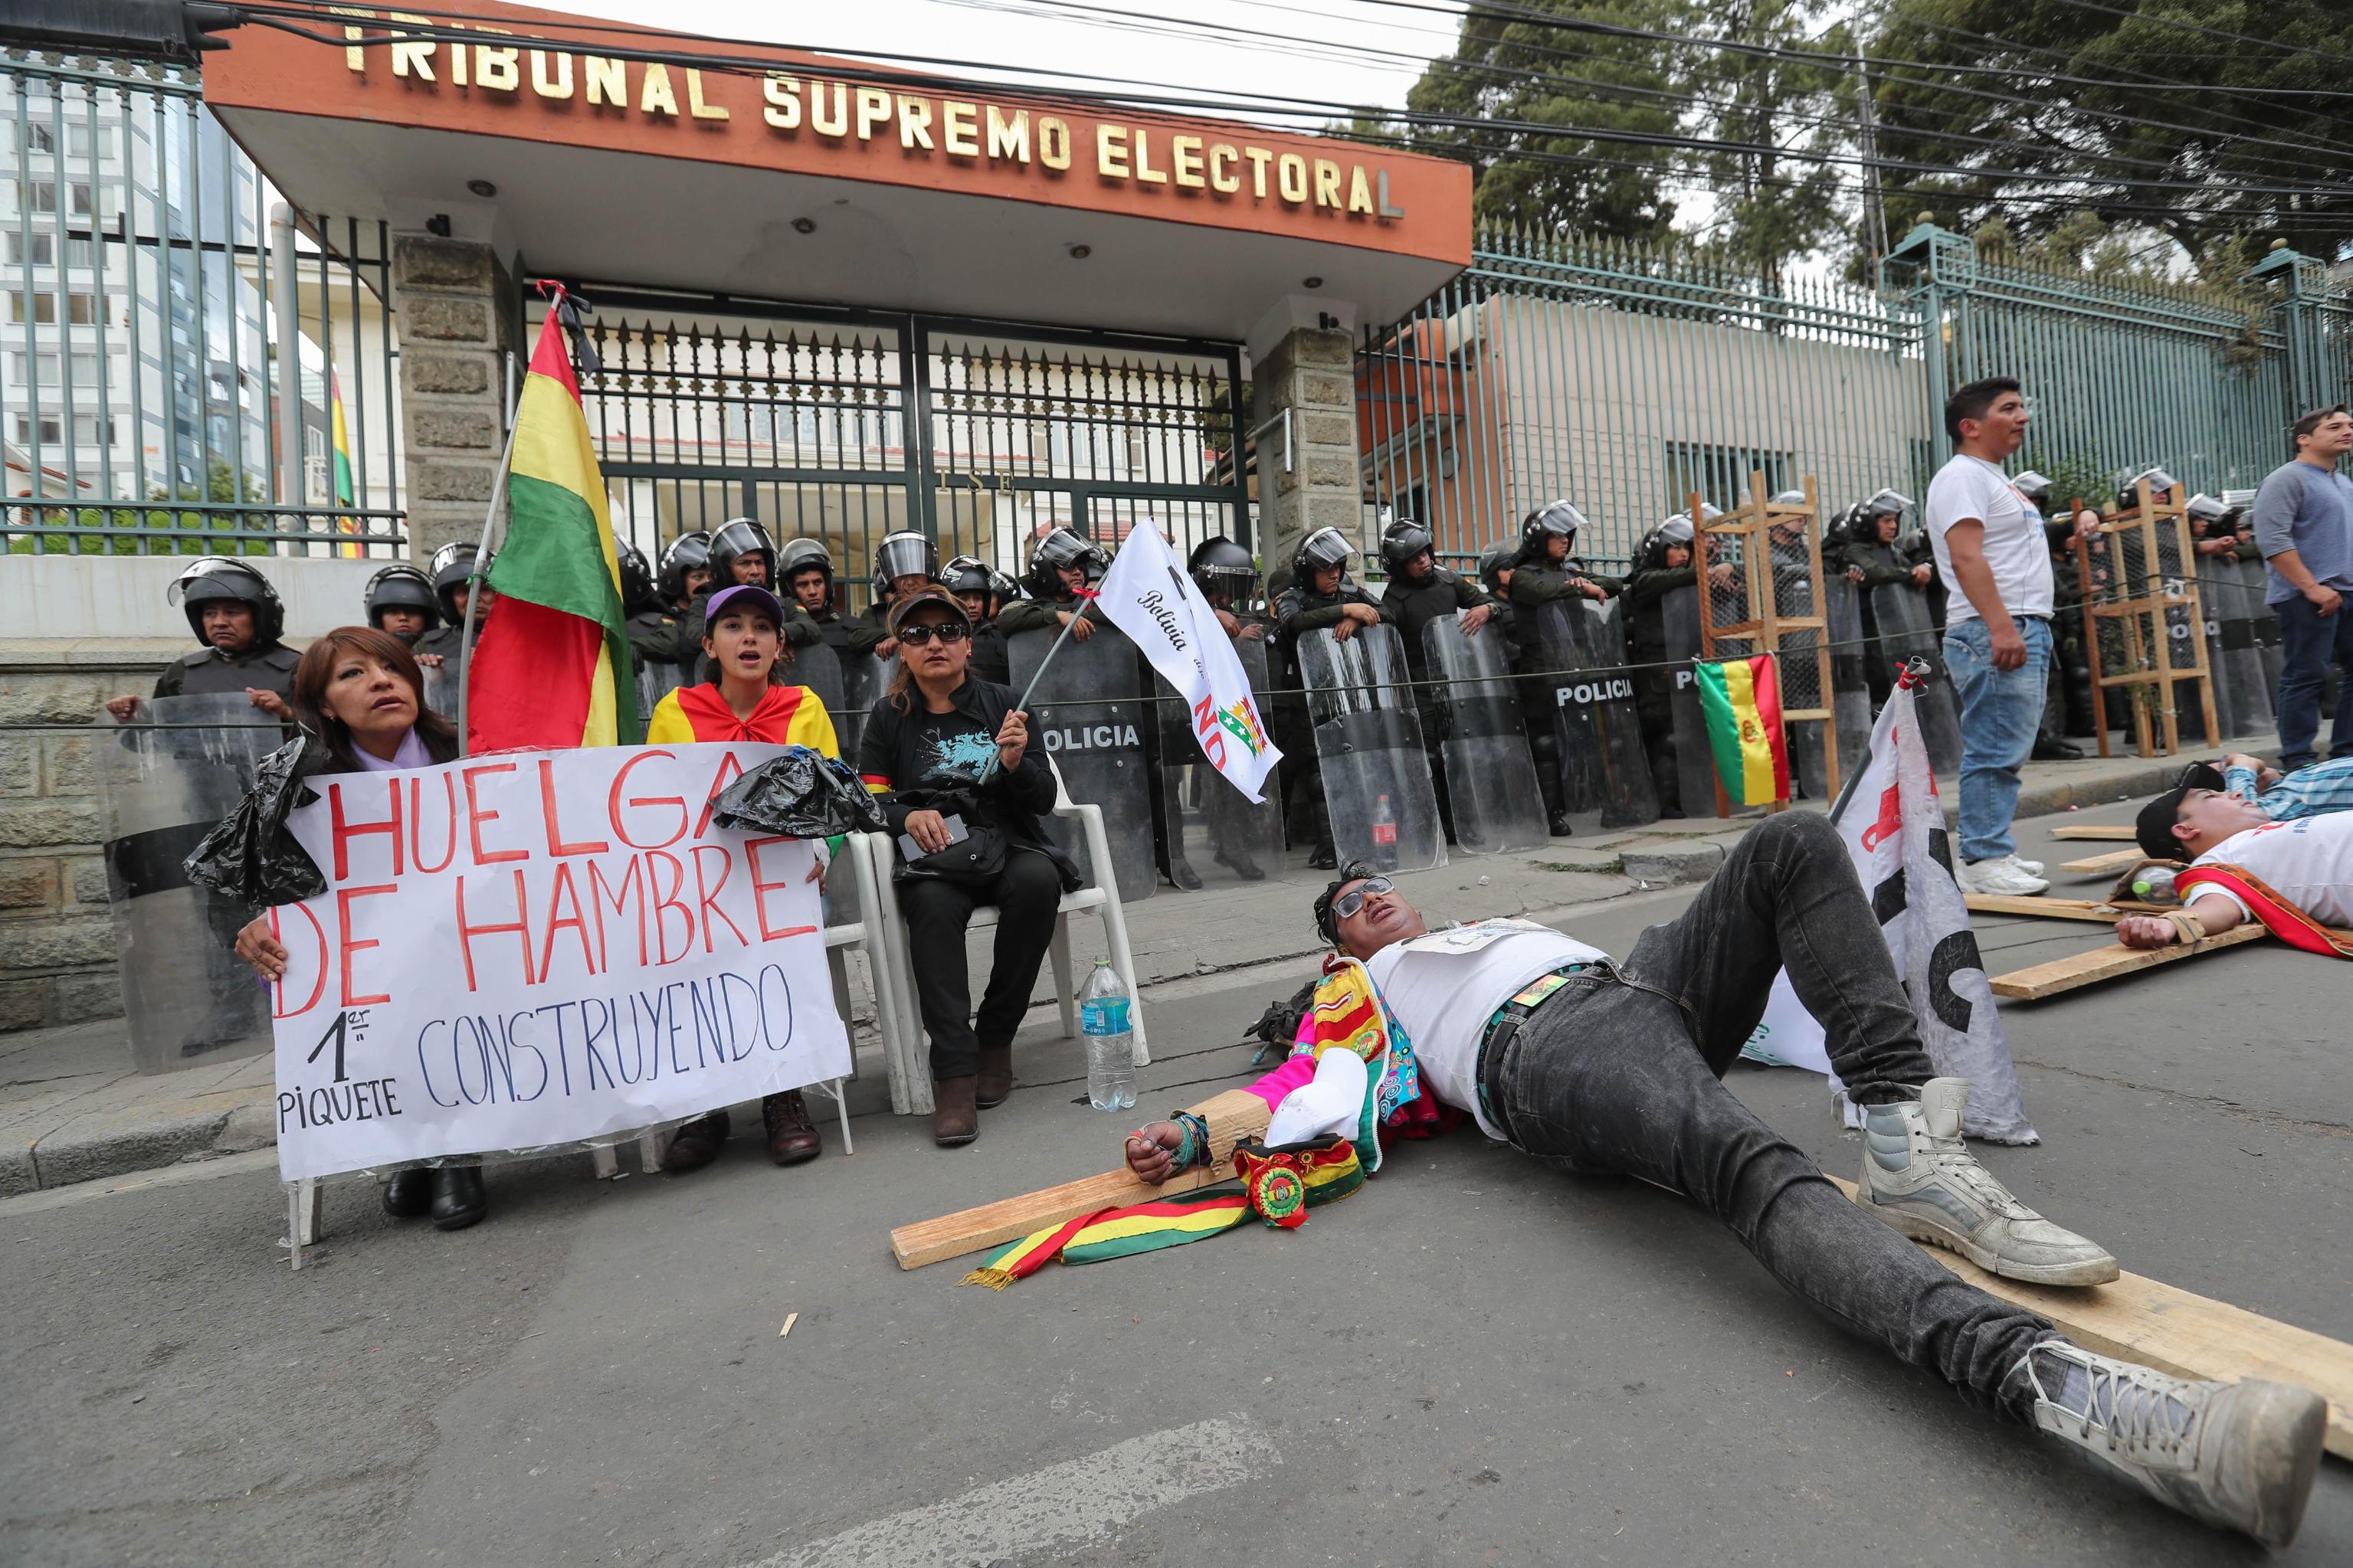 Proteste Bolivia 6 dicembre